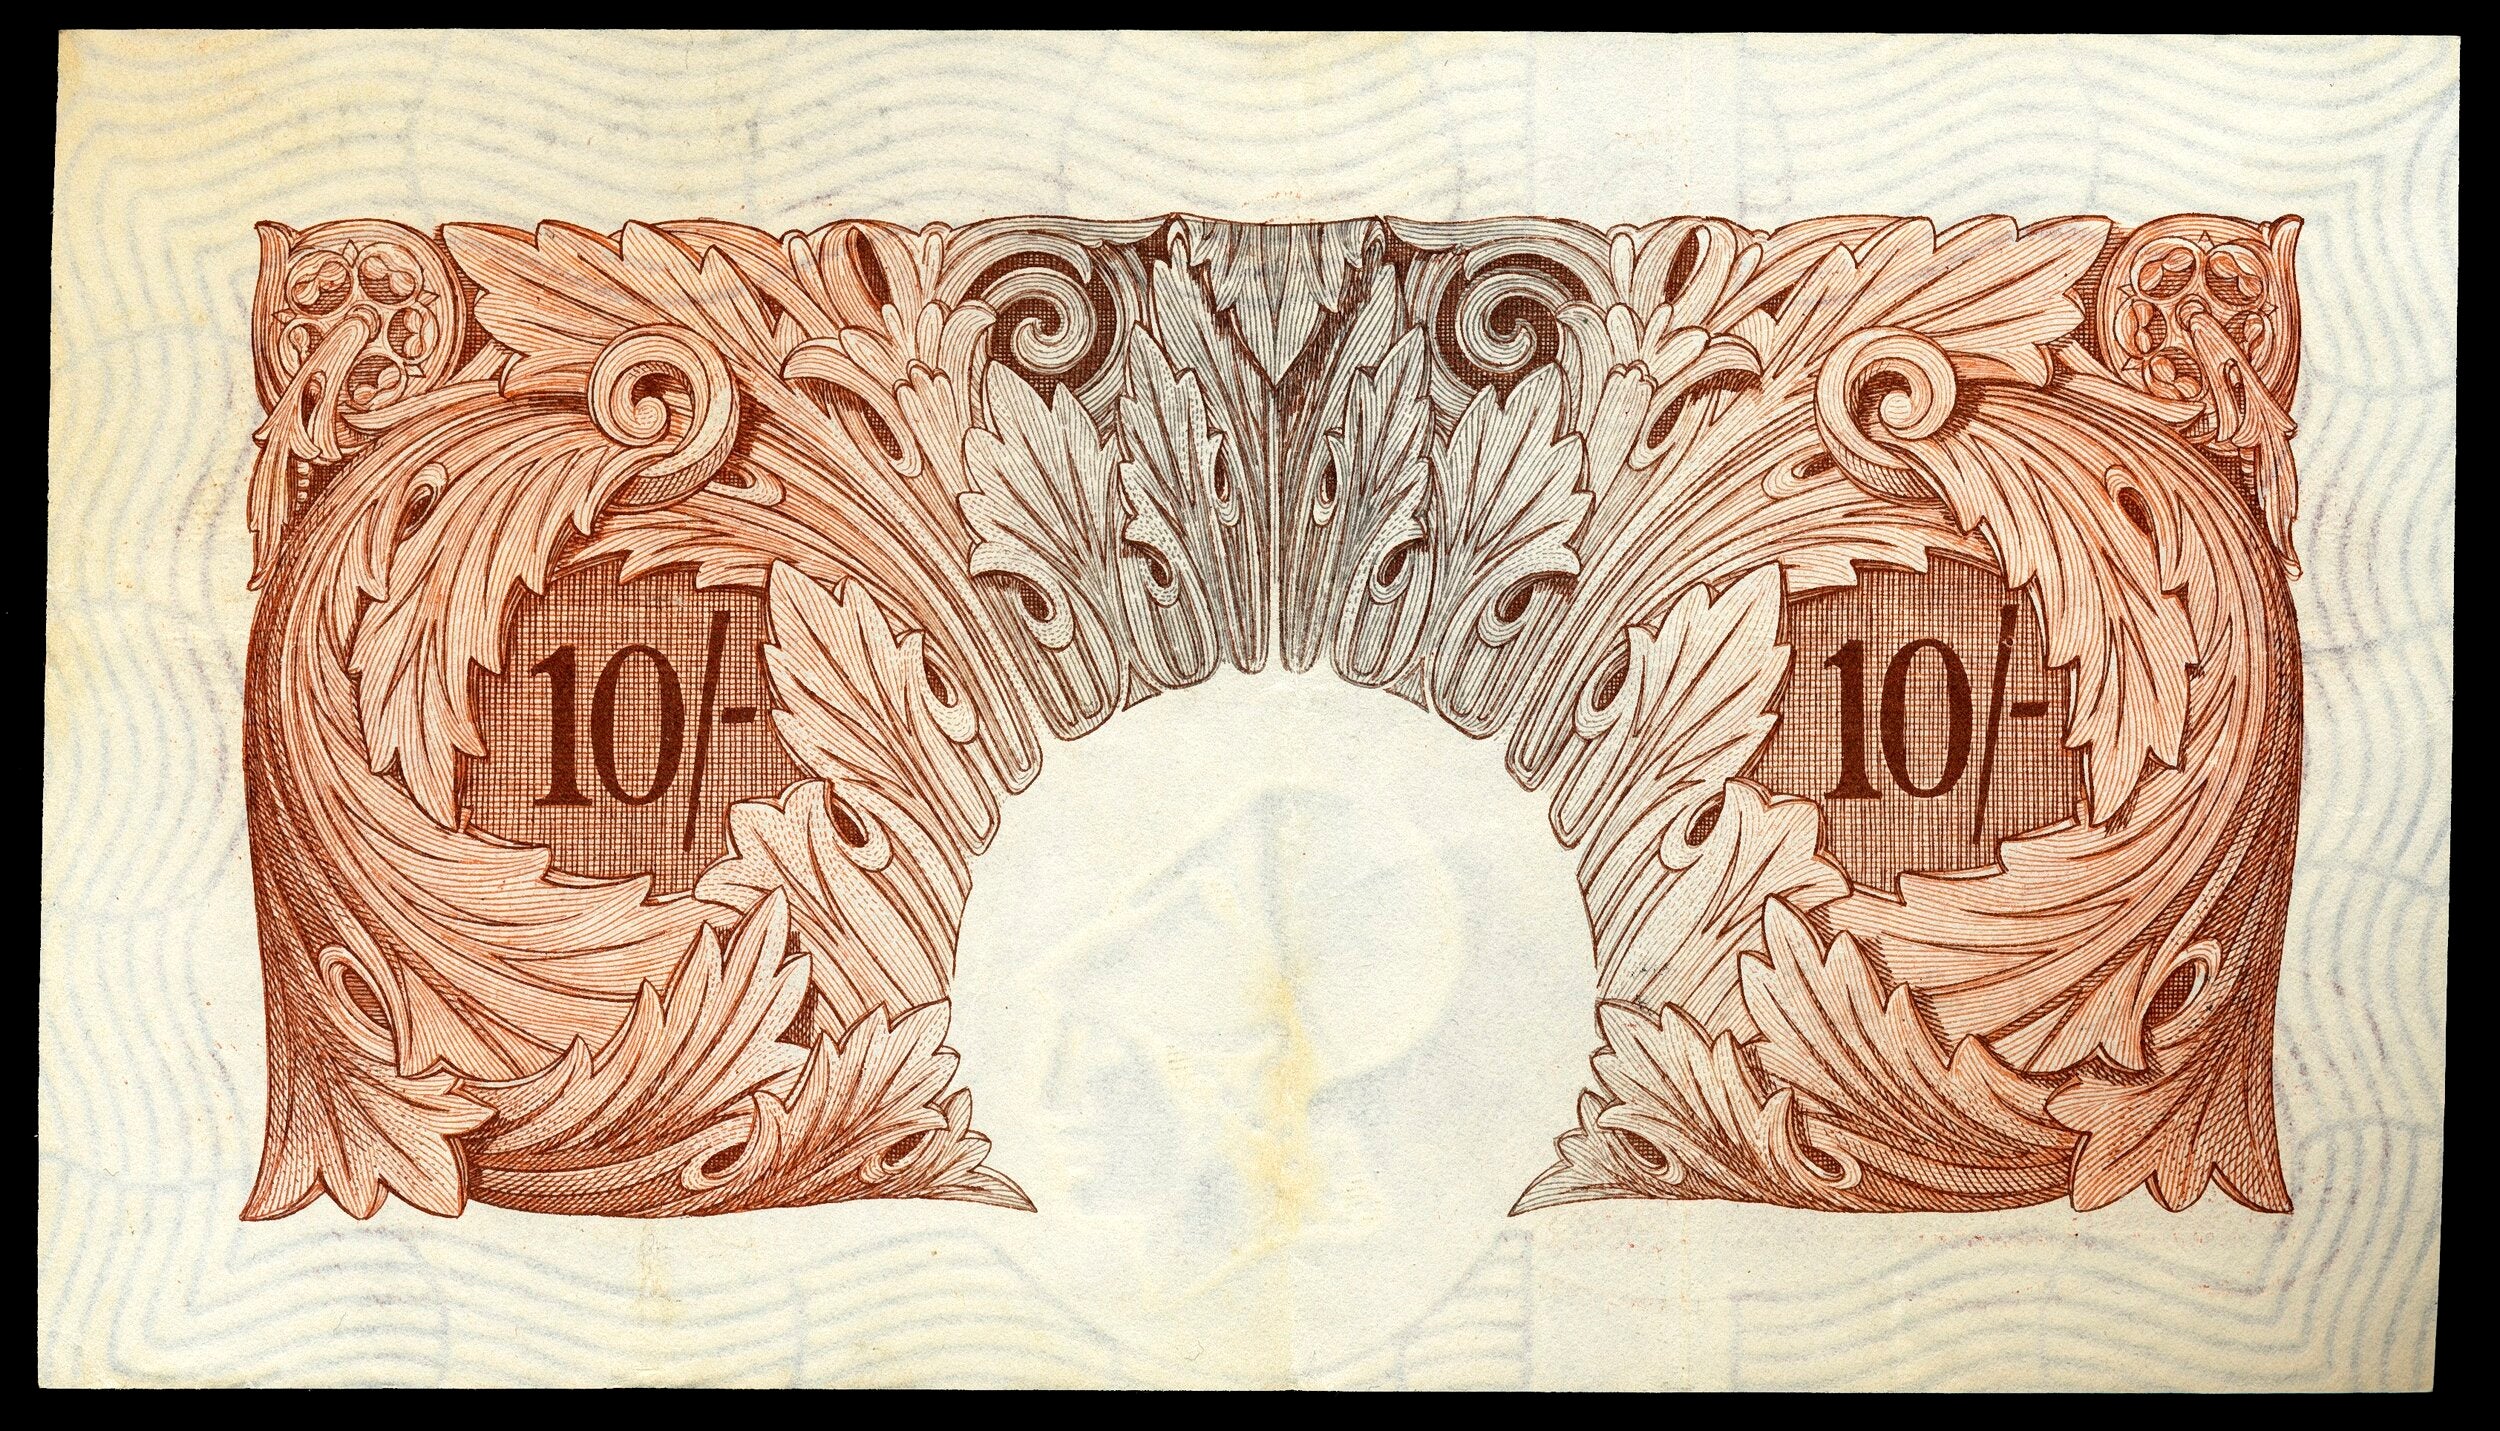 English Banknotes - O'Brien – Coins and Banknotes